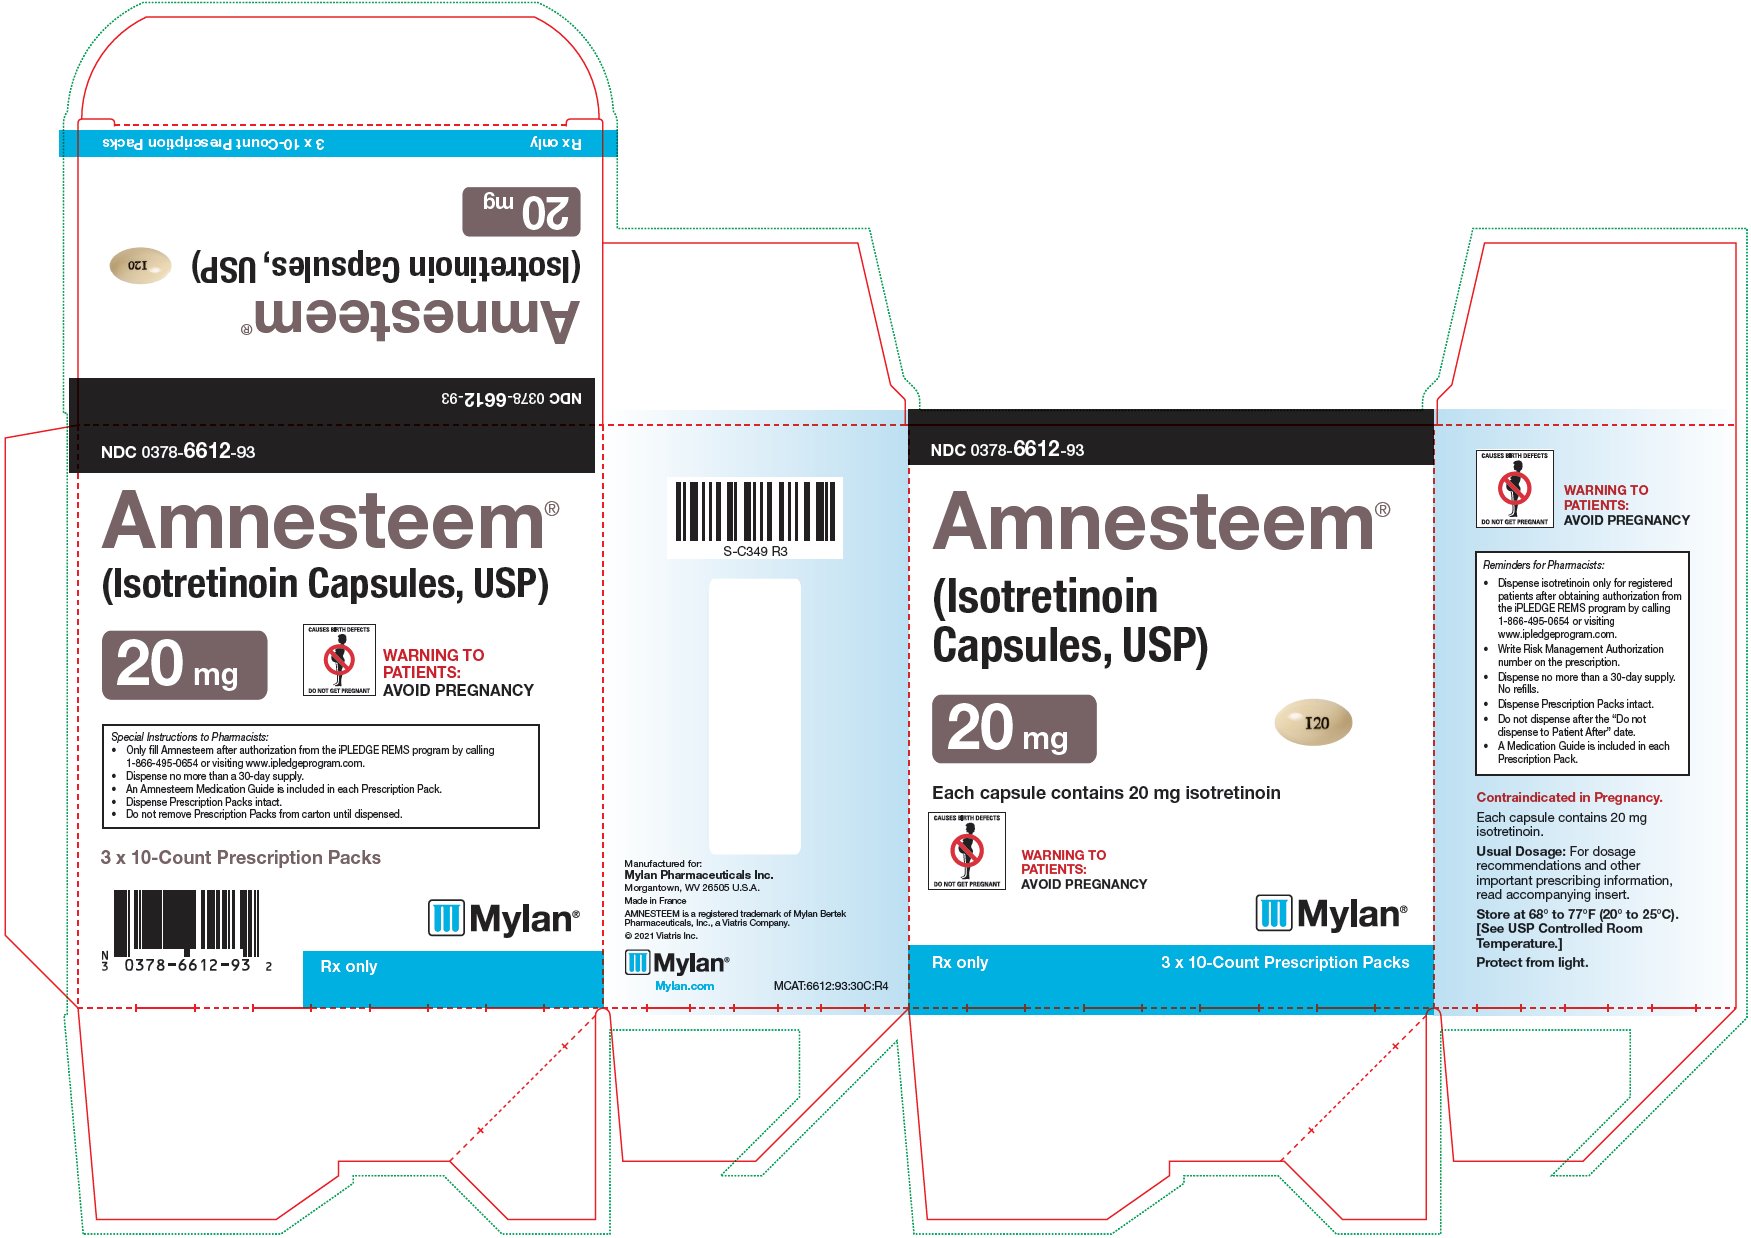 Amnesteem Capsules 20 mg Carton Label